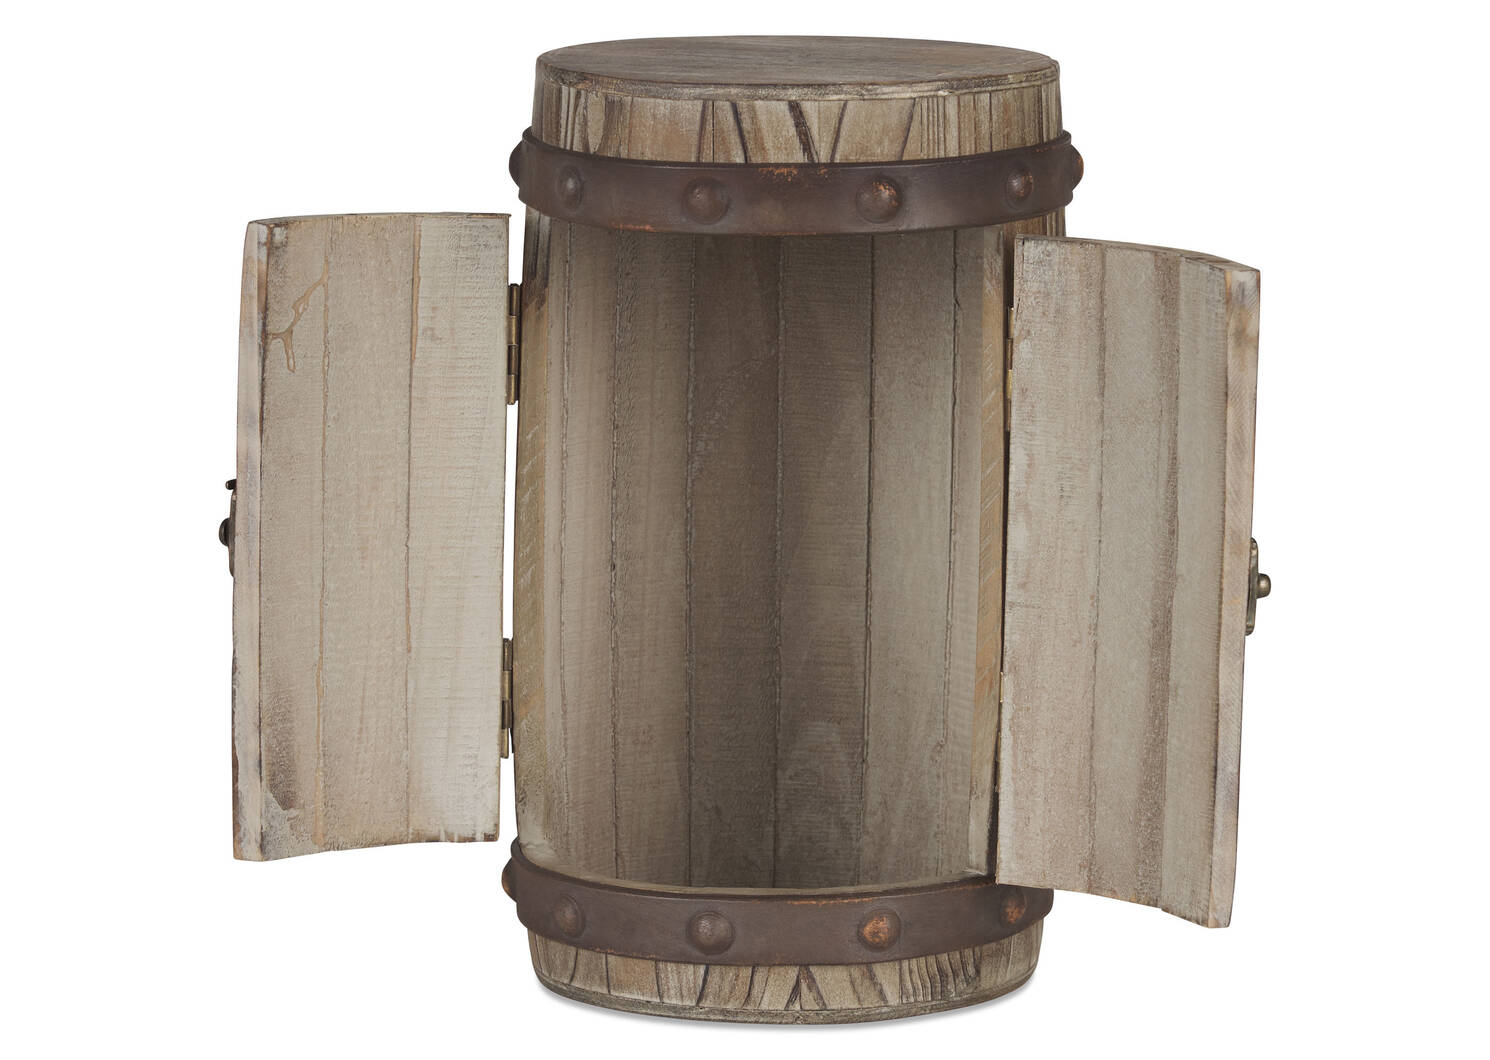 Wylie Barrel Storage Box